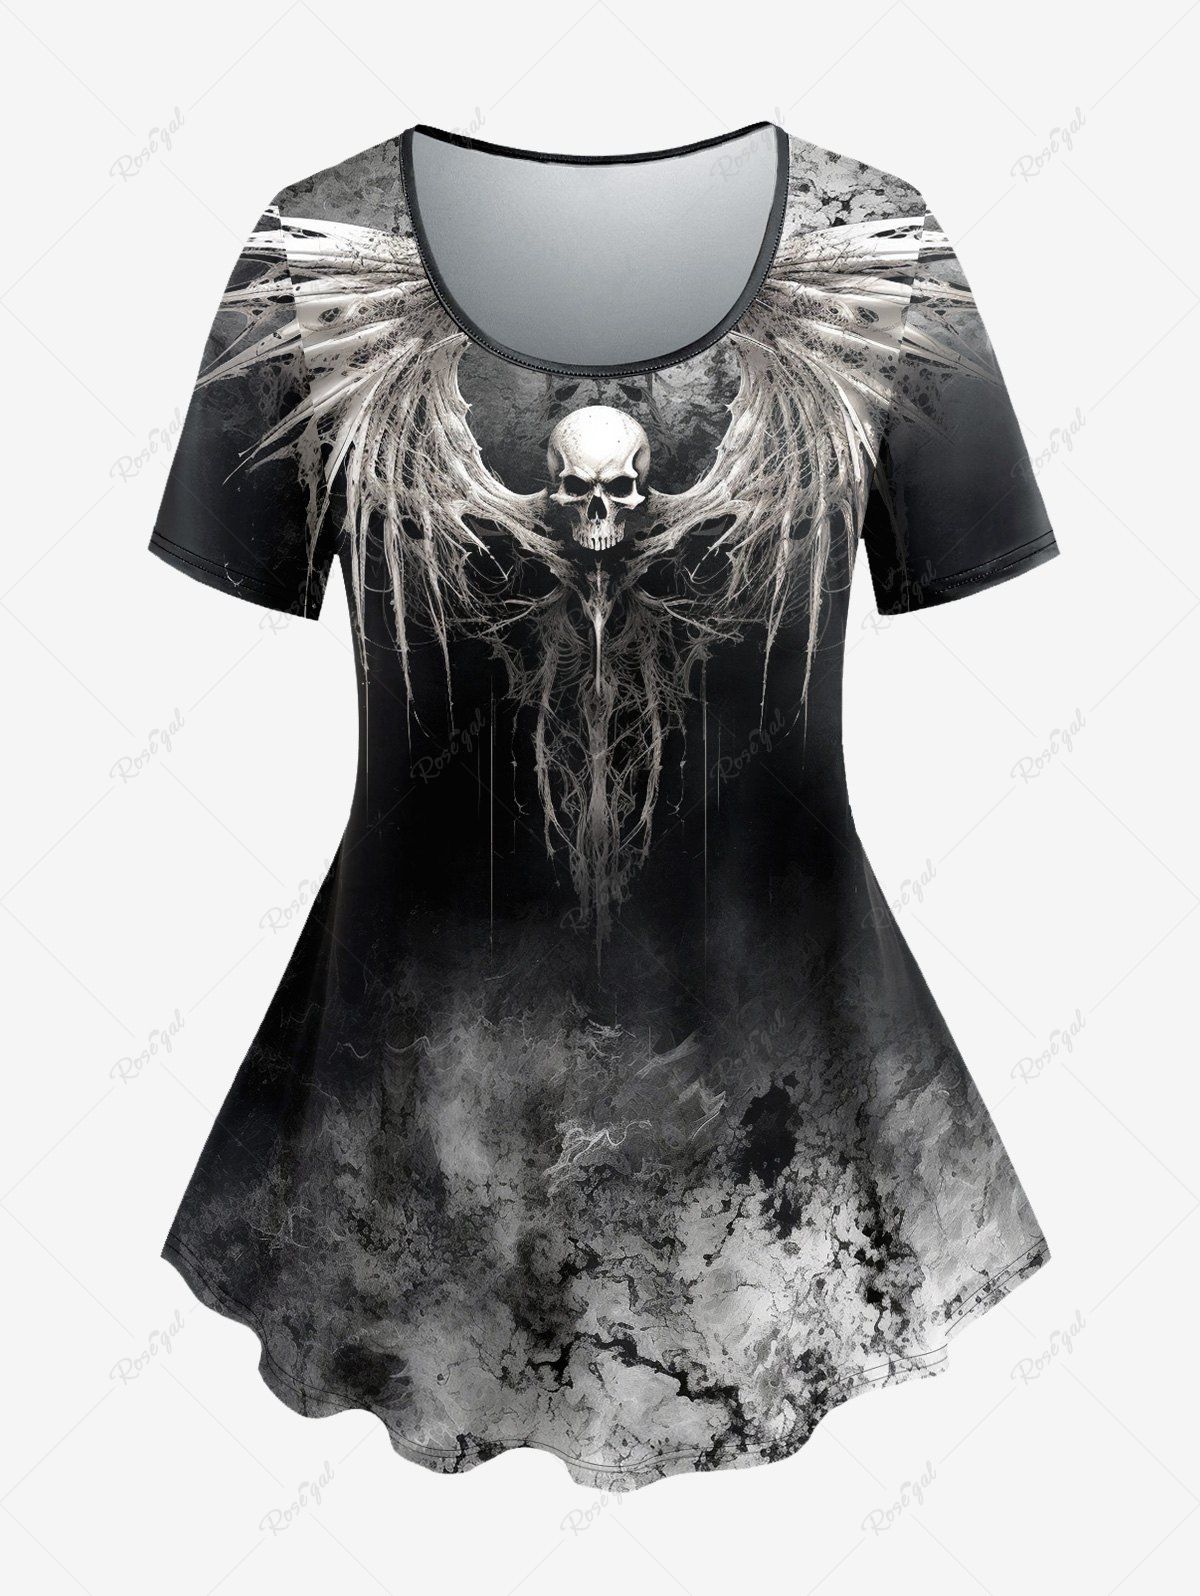 T-shirt D'Halloween Teinté Crâne Ombrée Style Gothique Noir 2X